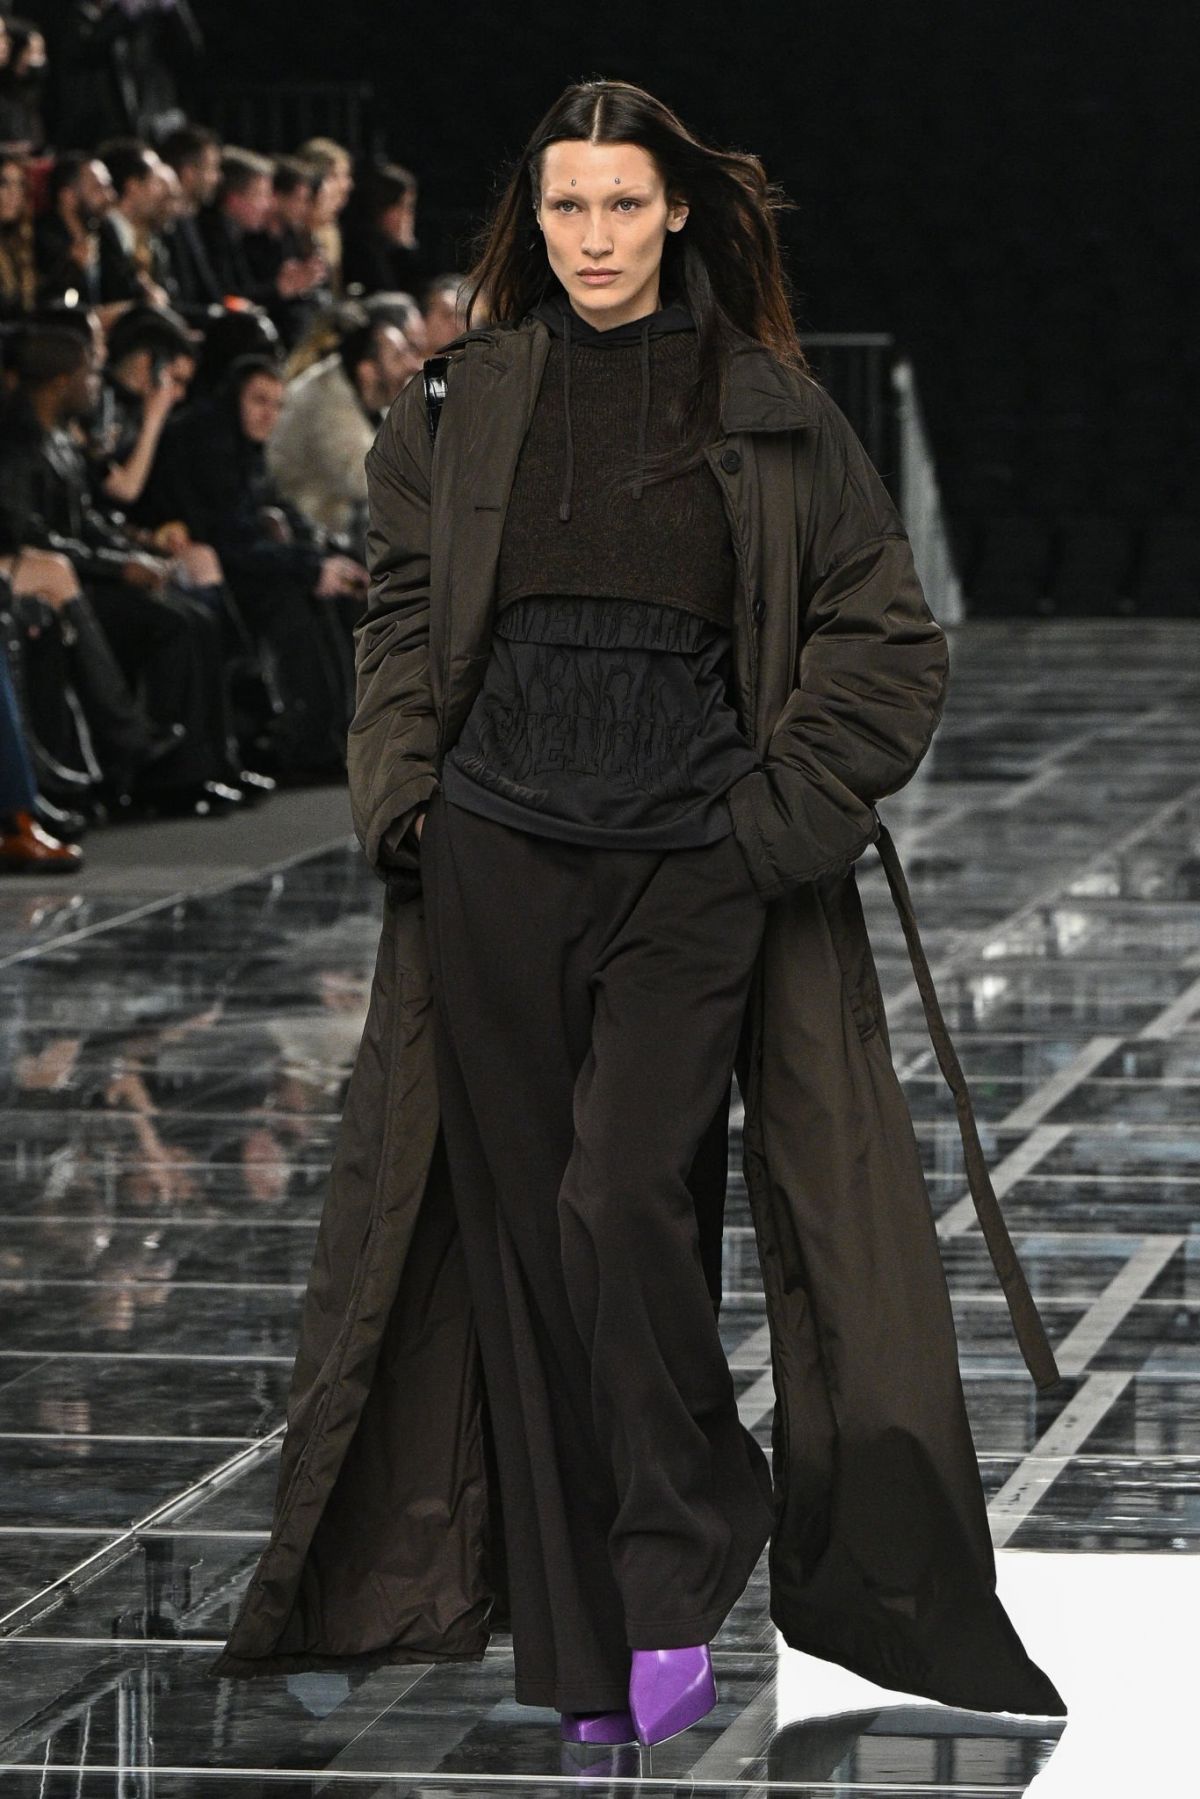 BELLA HADID Walks Runway at Givenchy Fashion Show in Paris 03/06/2022 ...